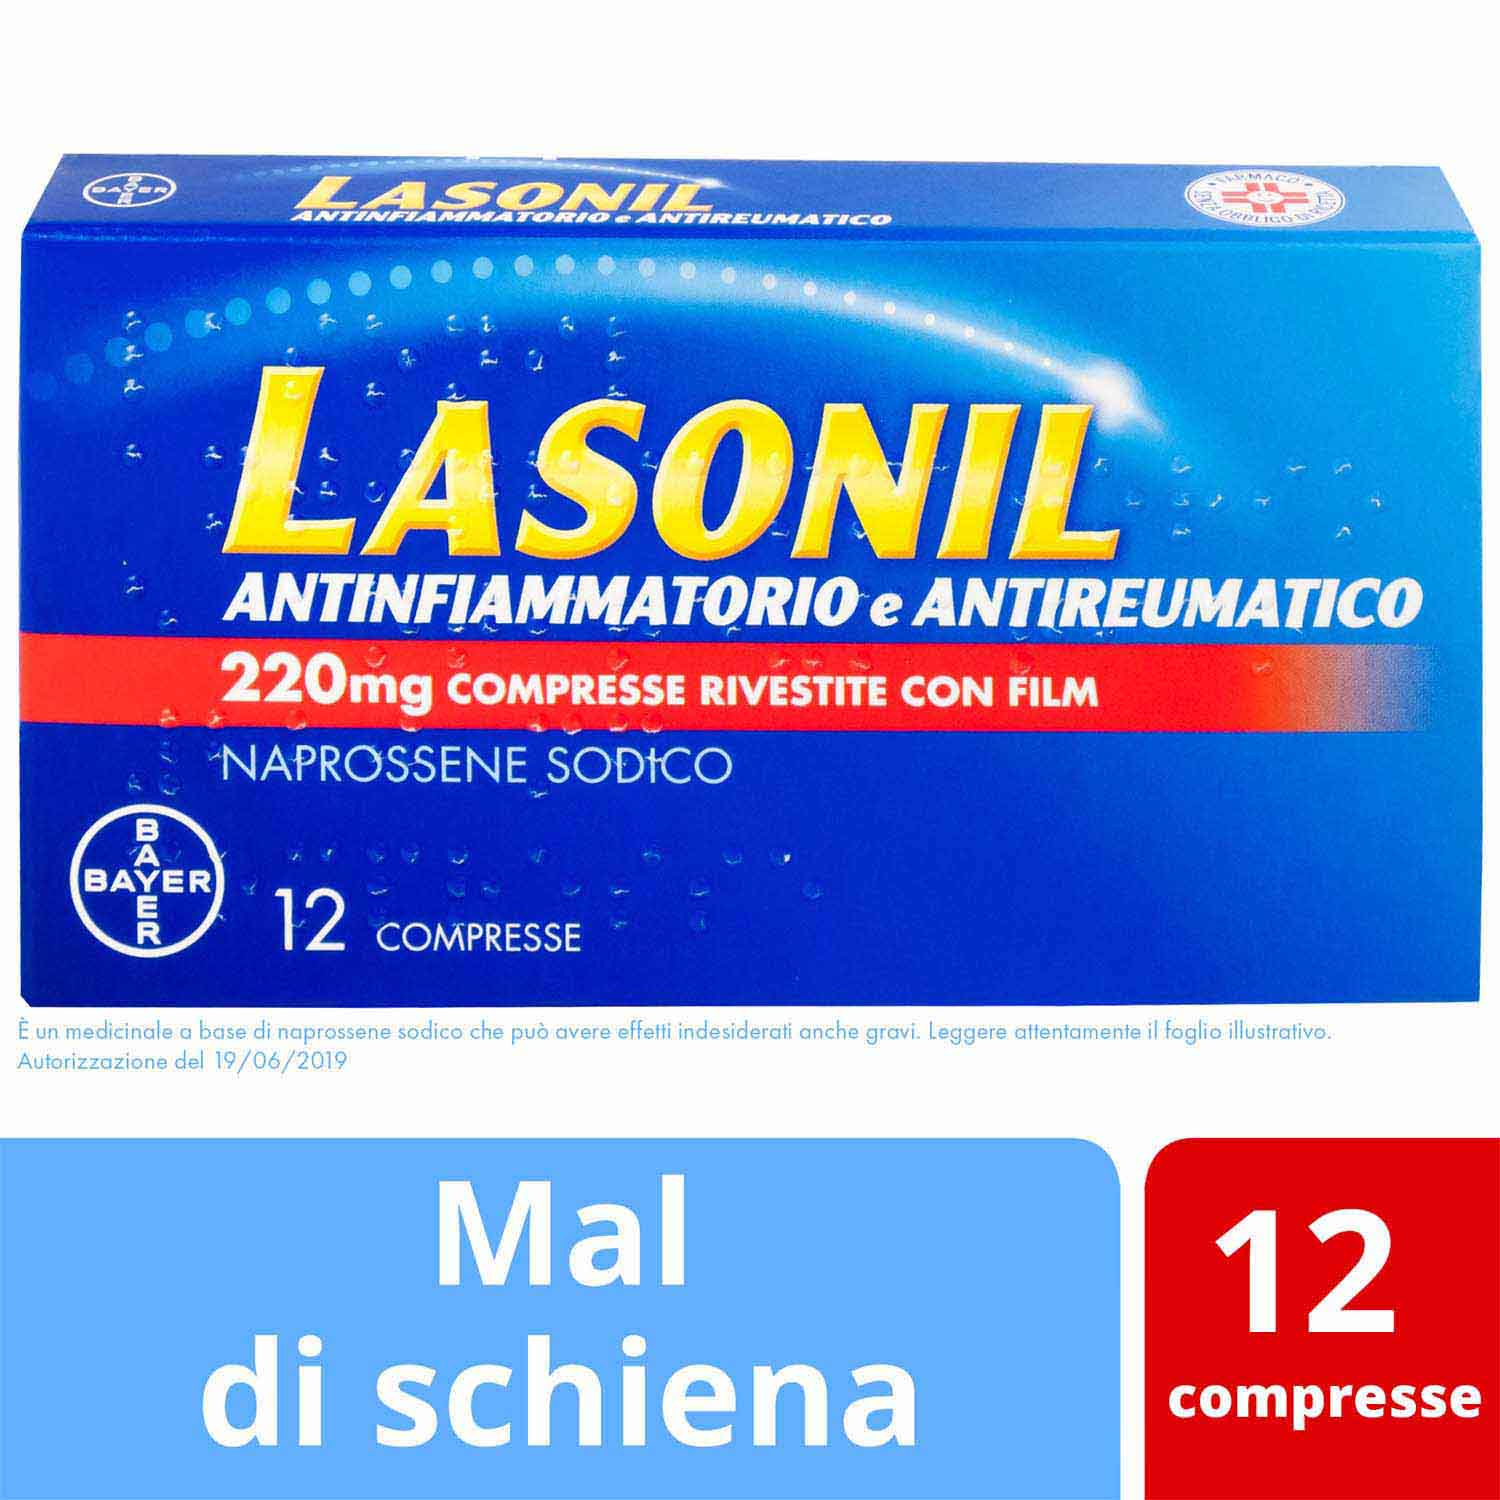 Image of Lasonil Antinfiammatorio e Antireumatico 220mg Naprossene Sodico 12 Compresse